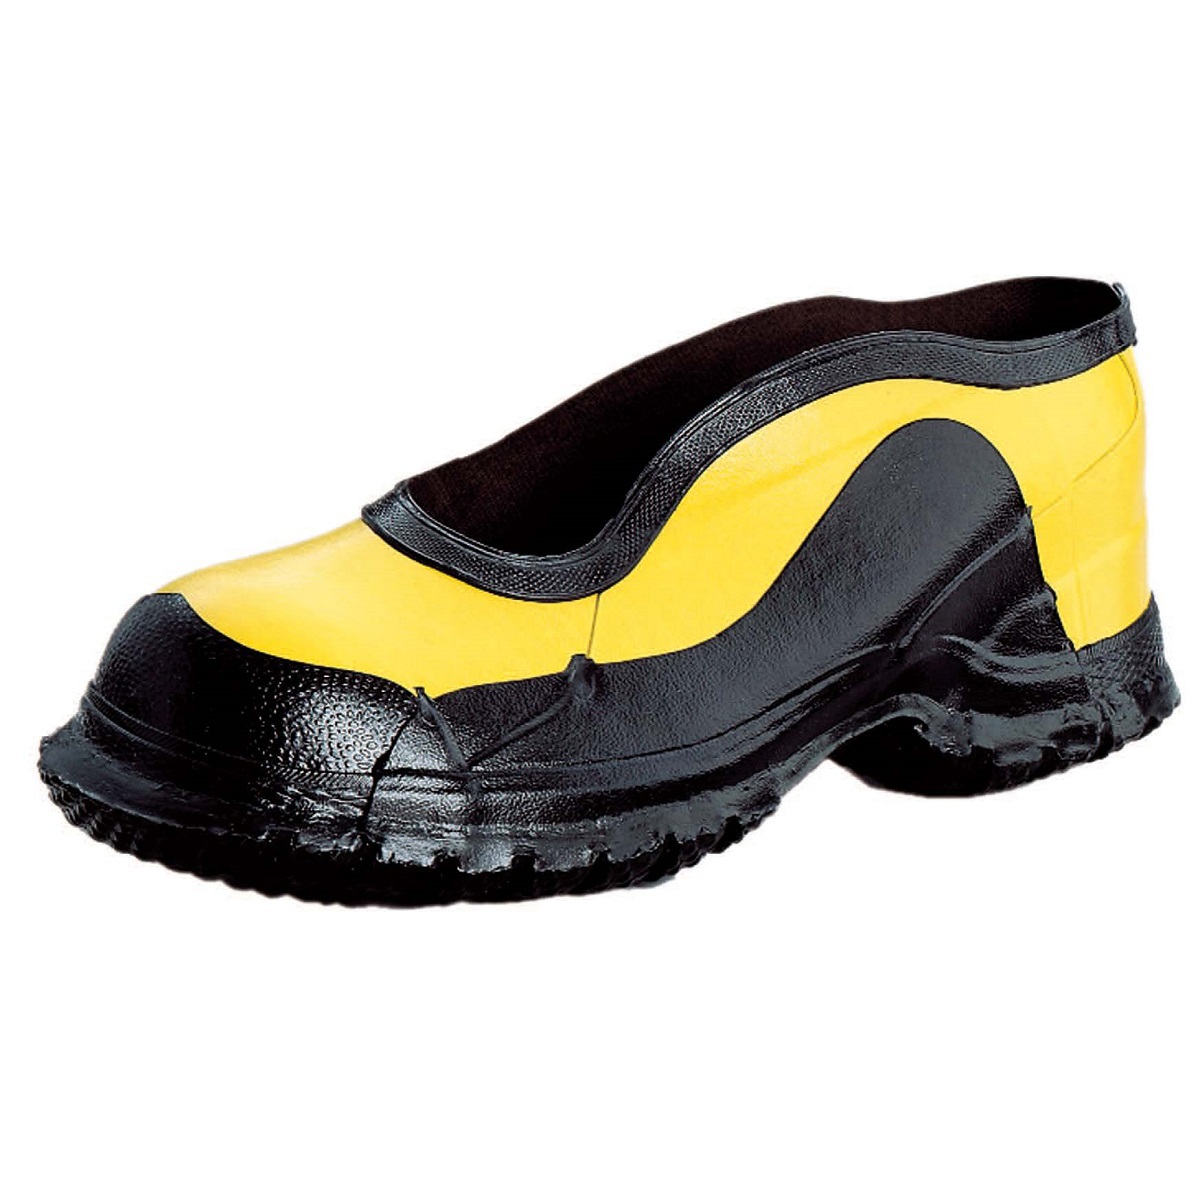 Honeywell Size 14 Salisbury Black/Yellow Rubber No Buckle Deep Heel Storm Overshoes With Fabric Lining